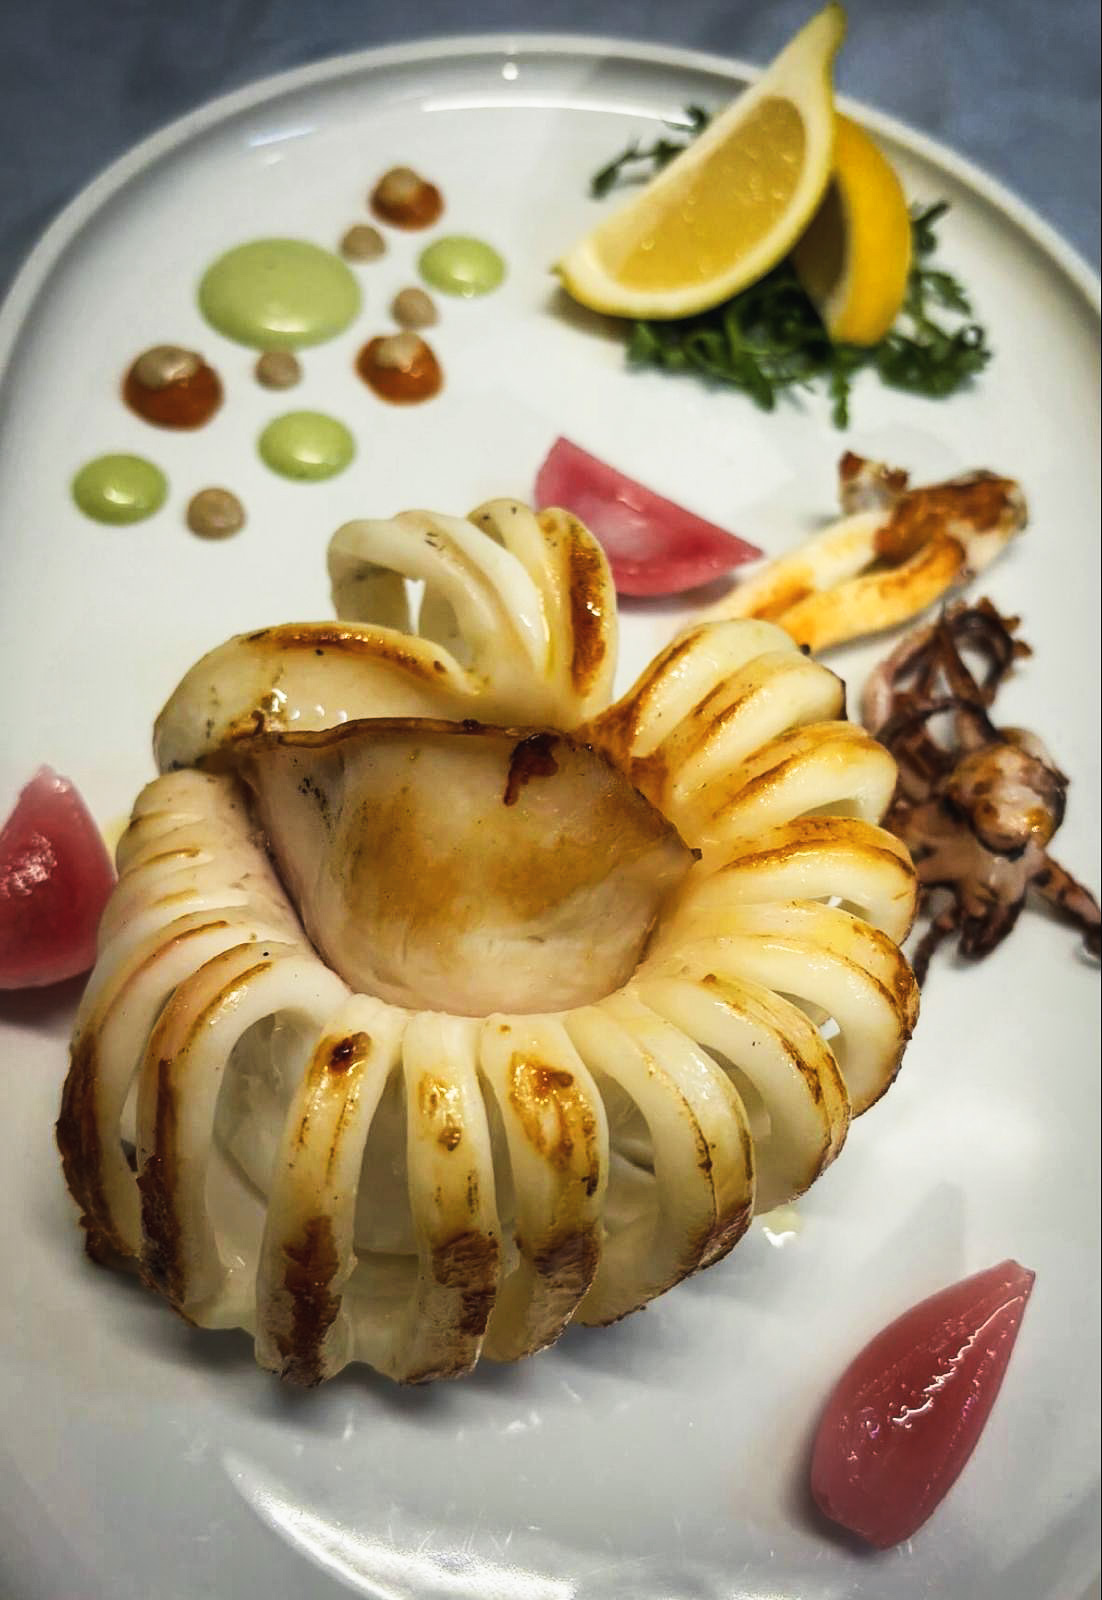 Calamaro alla griglia con maionese al basilico, salsa di pomodoro arrosto e petali di cipolla rossa marinata